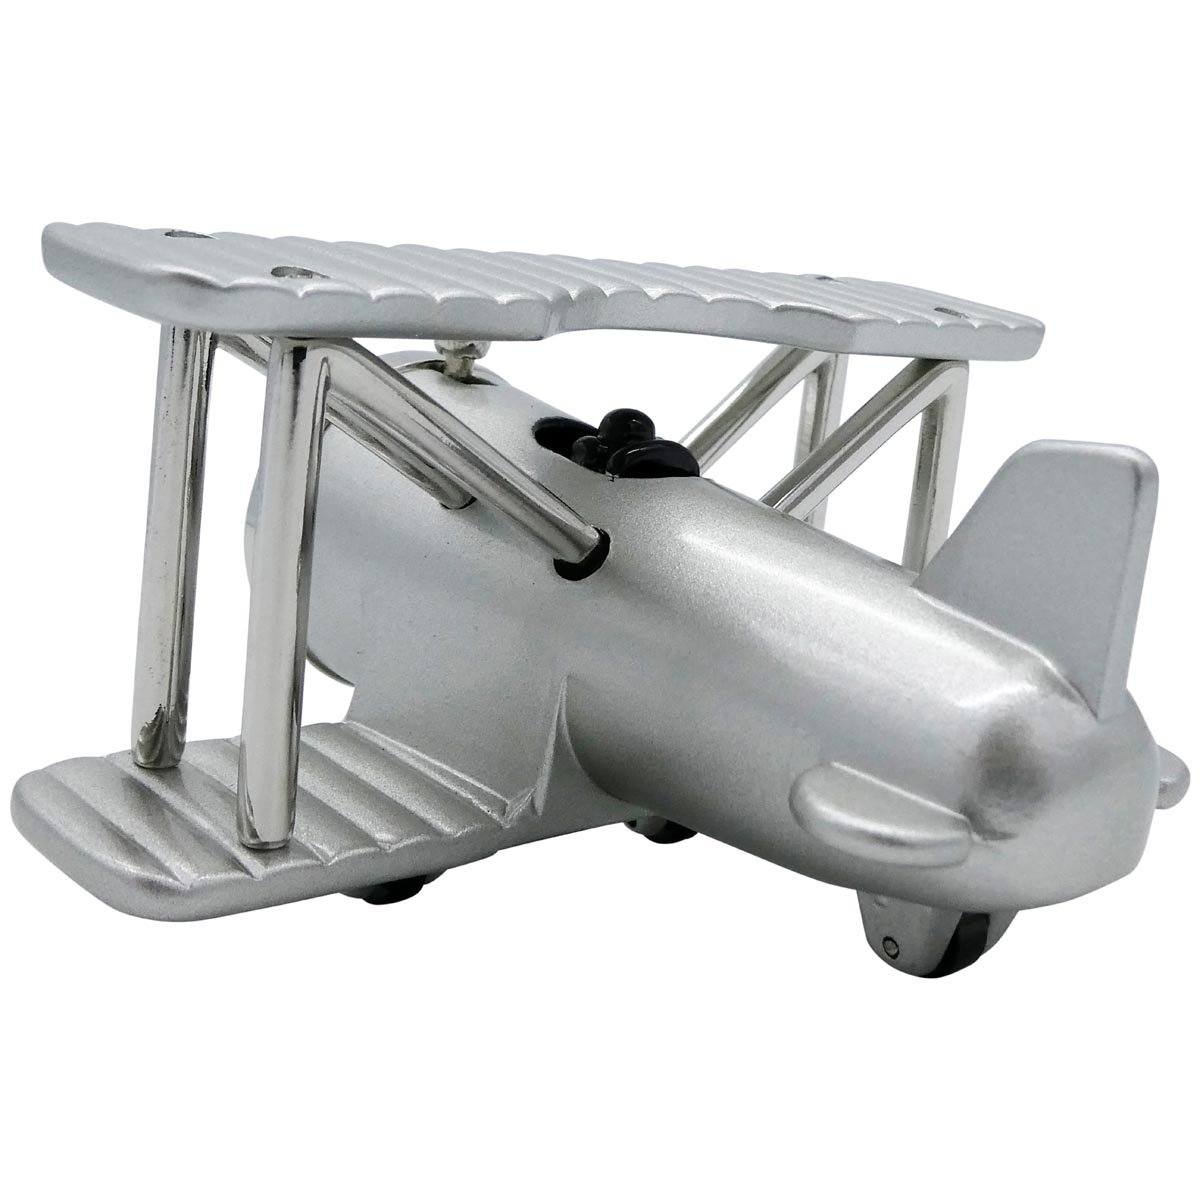 Pilot Toys Silver Biplane Desk Clock - PilotMall.com